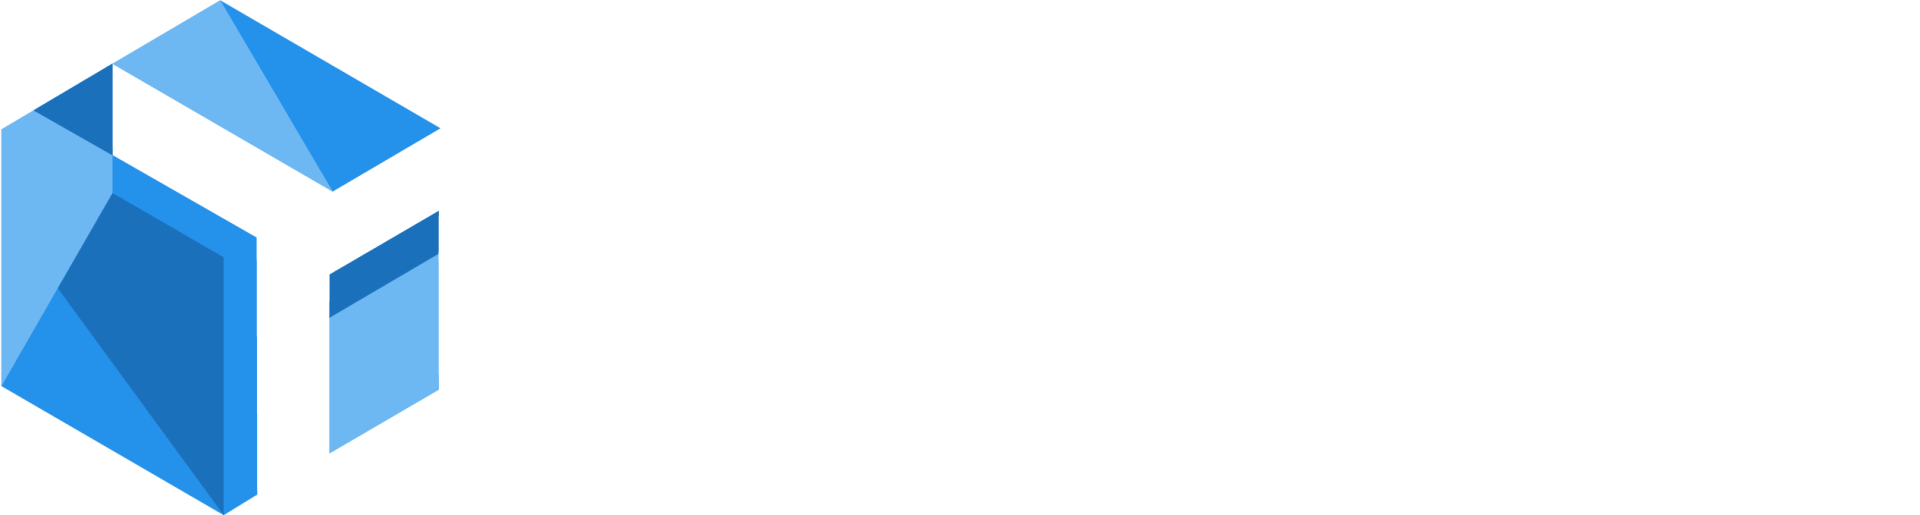 taskctrl logo